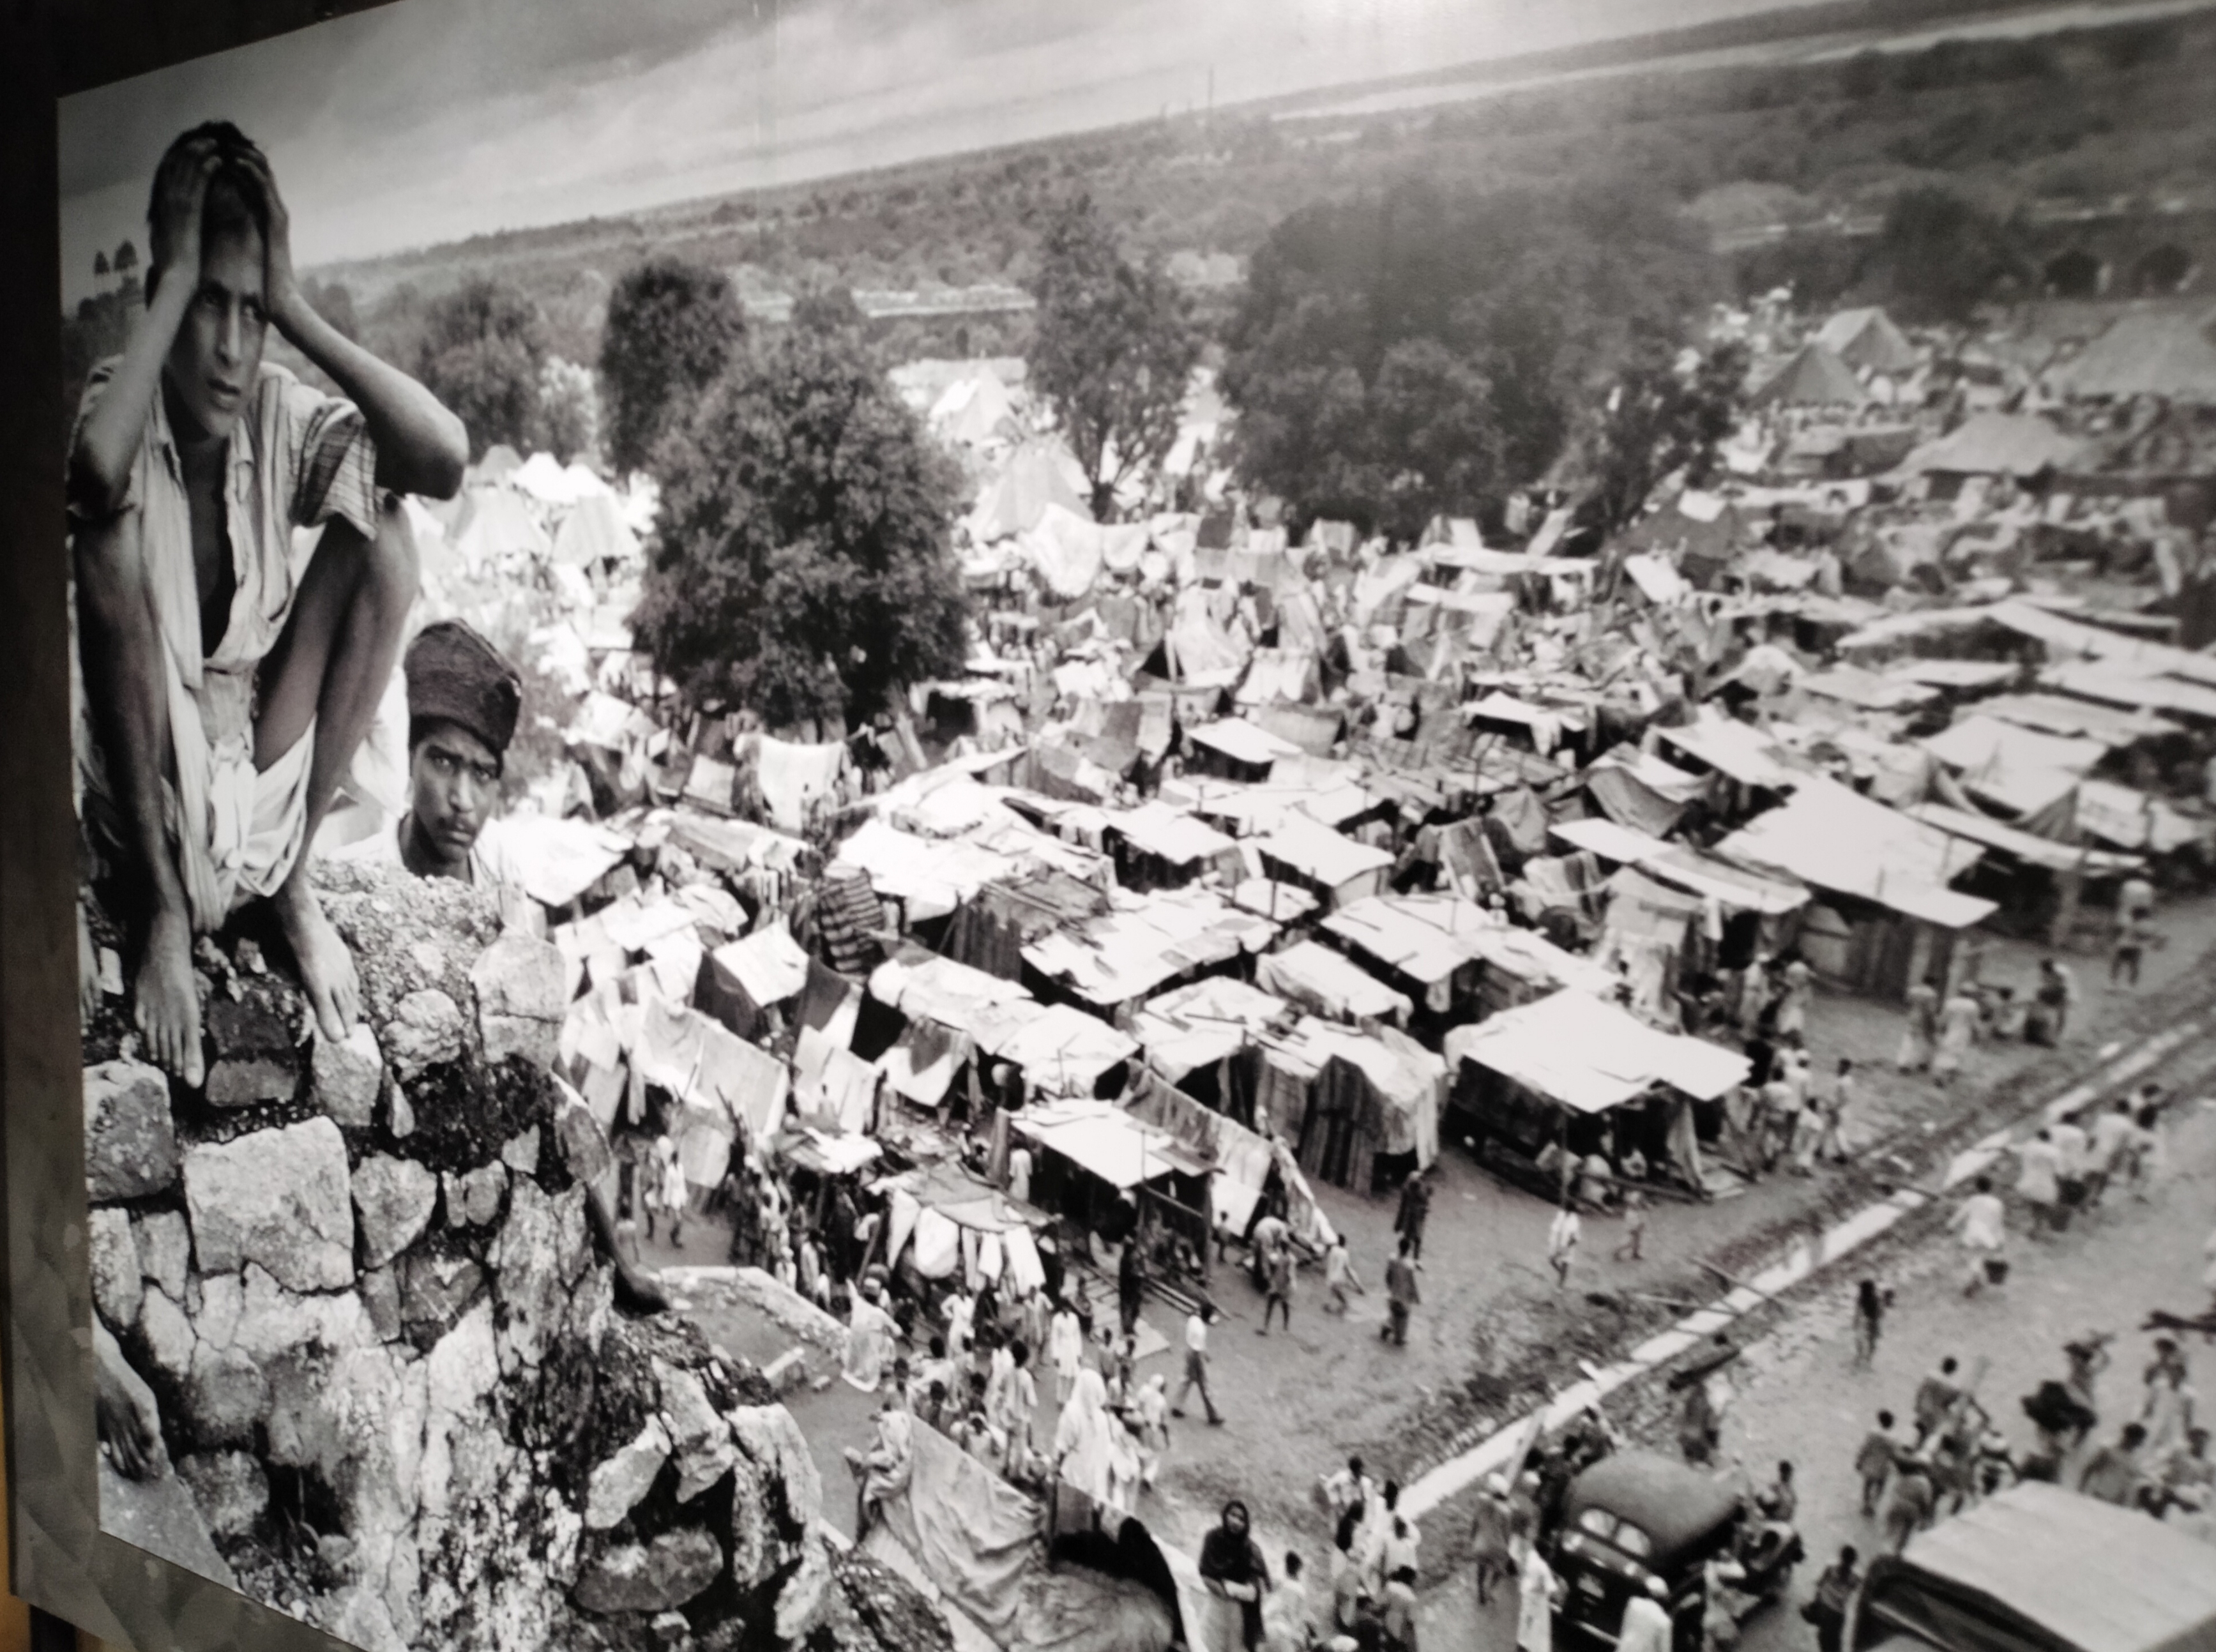 भारत के विभाजन के समय की एक तस्वीर